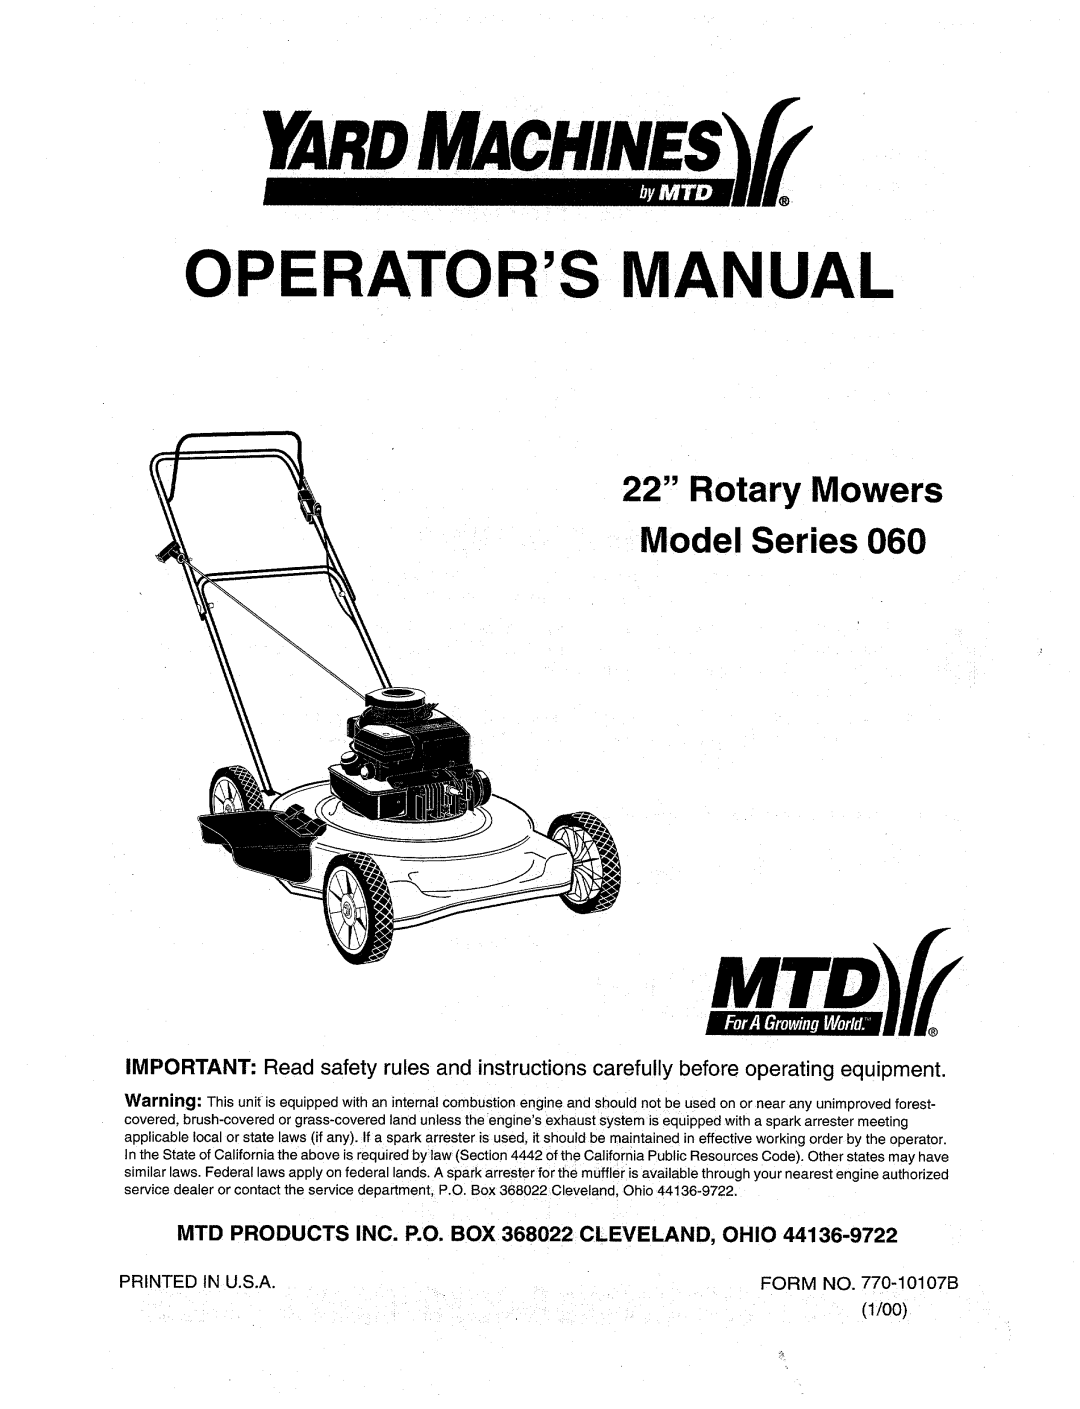 MTD 60 manual 